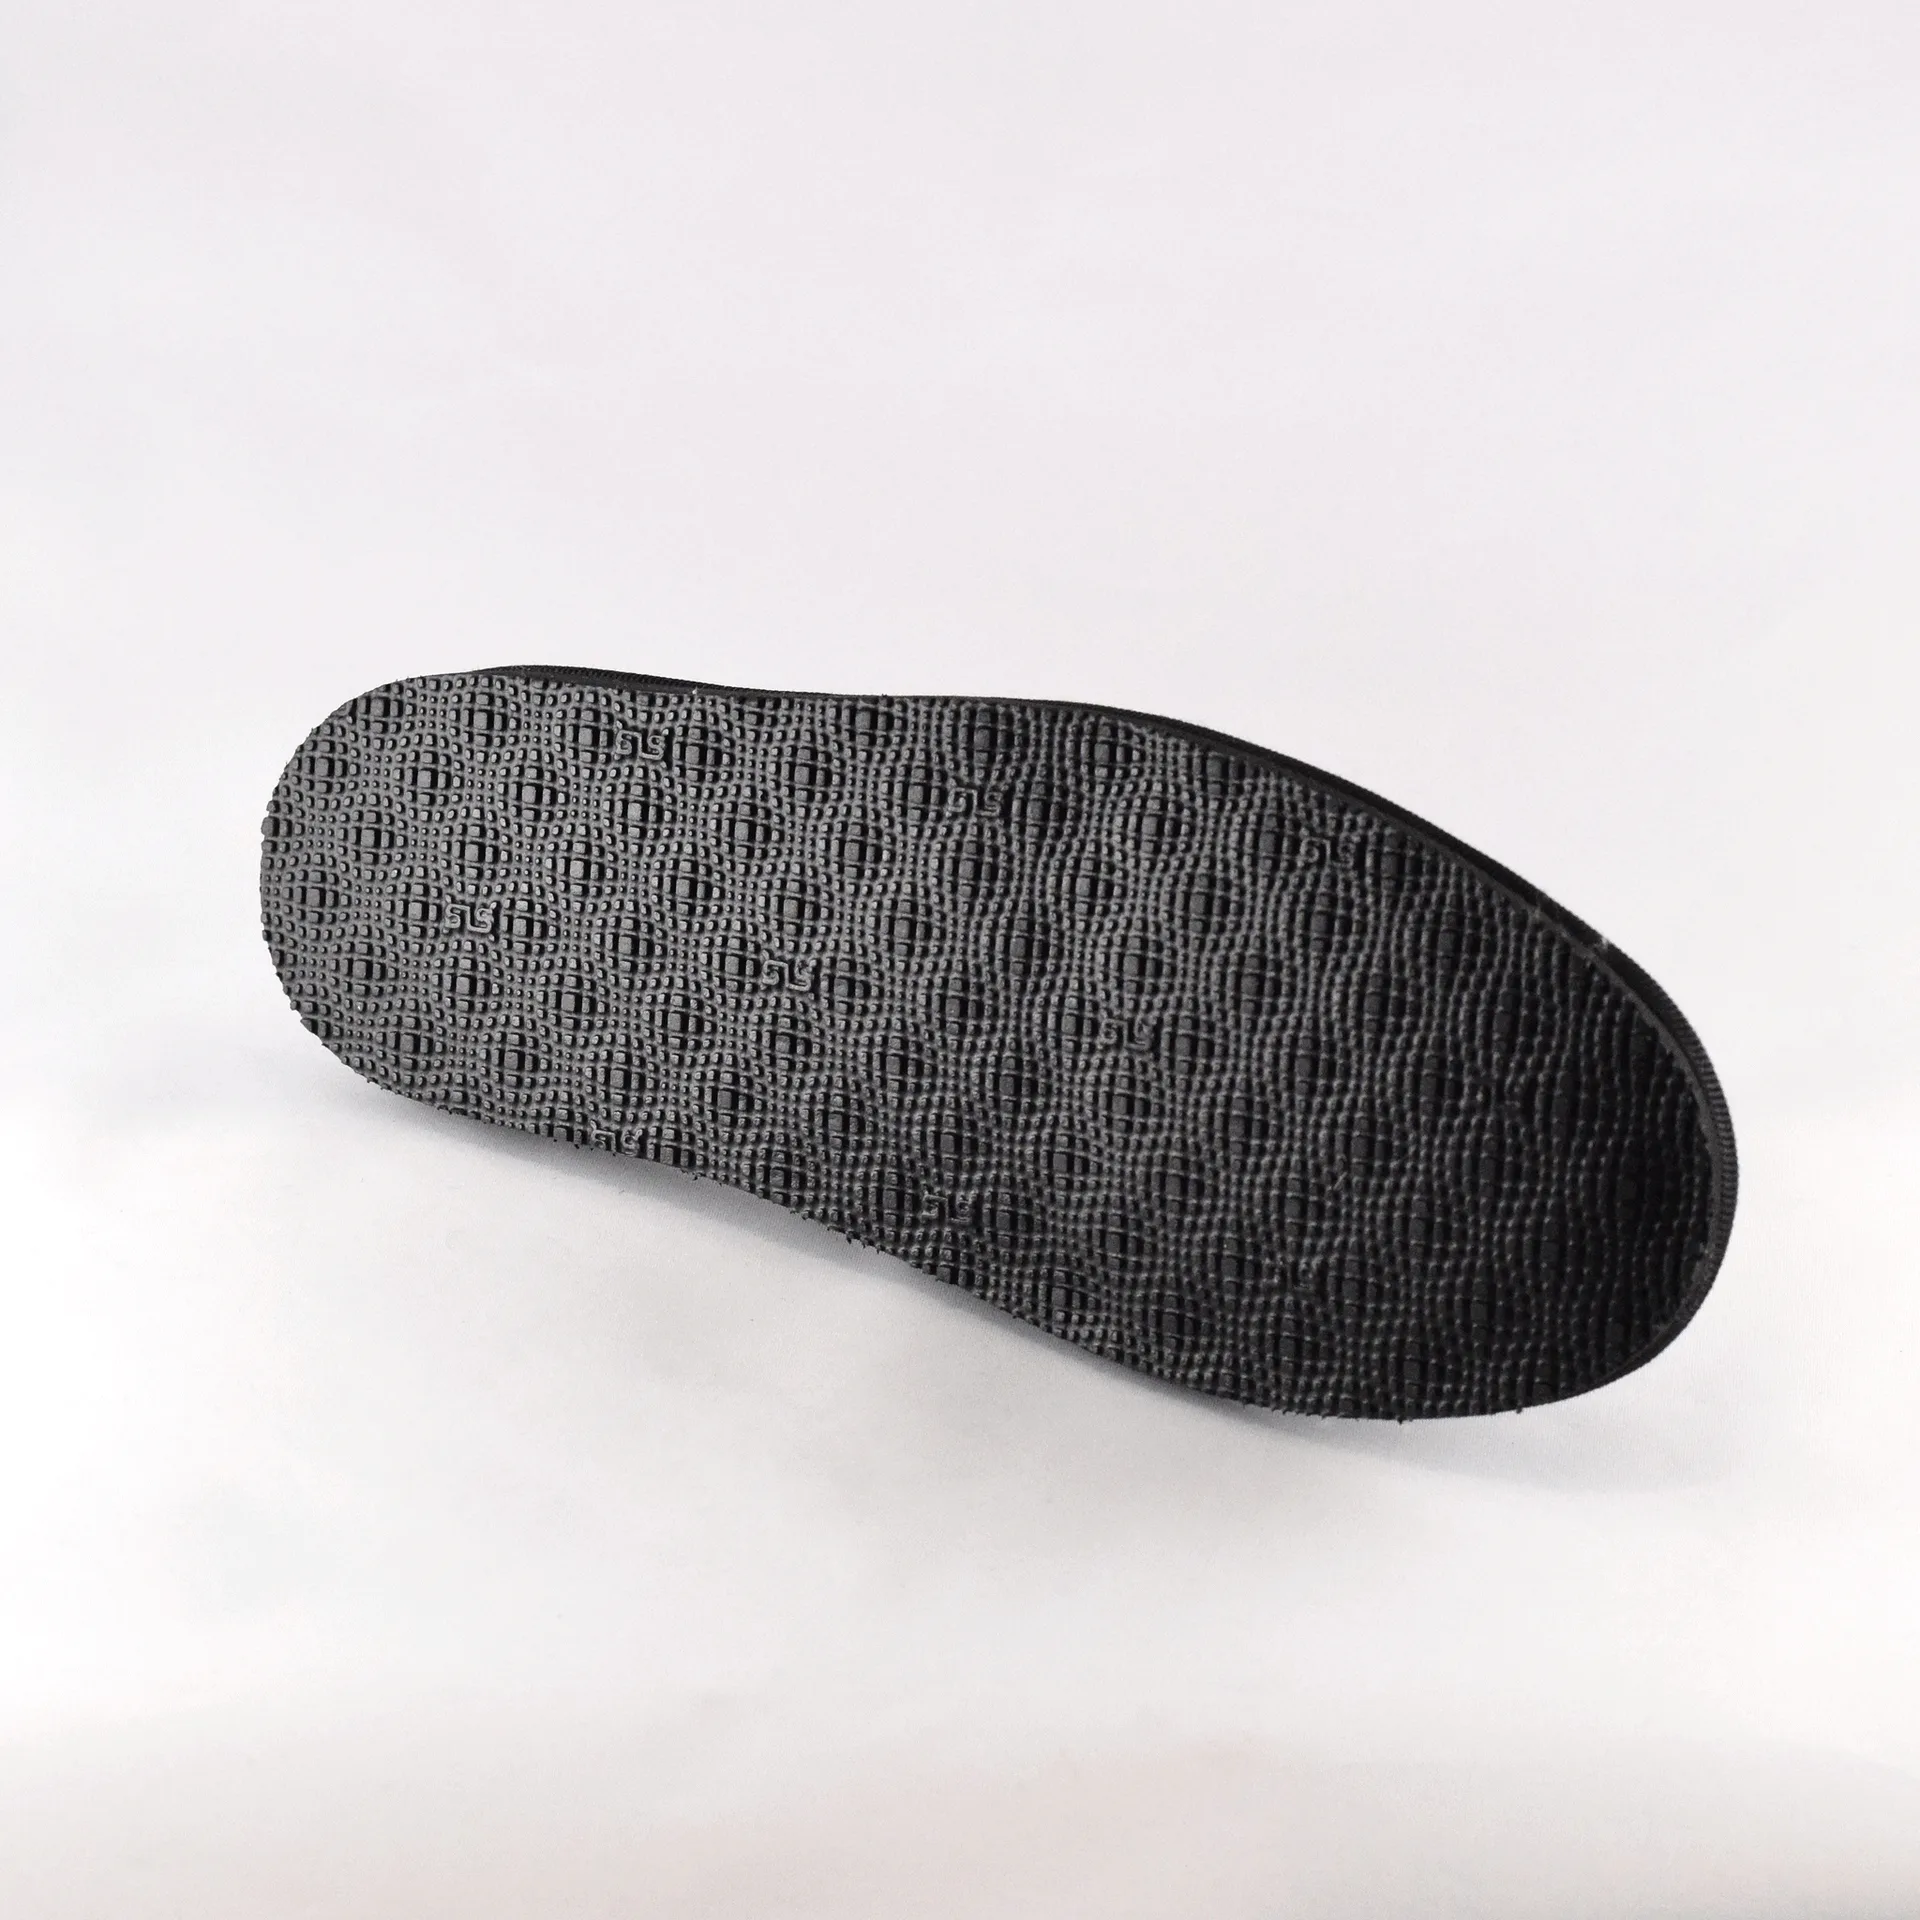 Quartz - Allround slipper